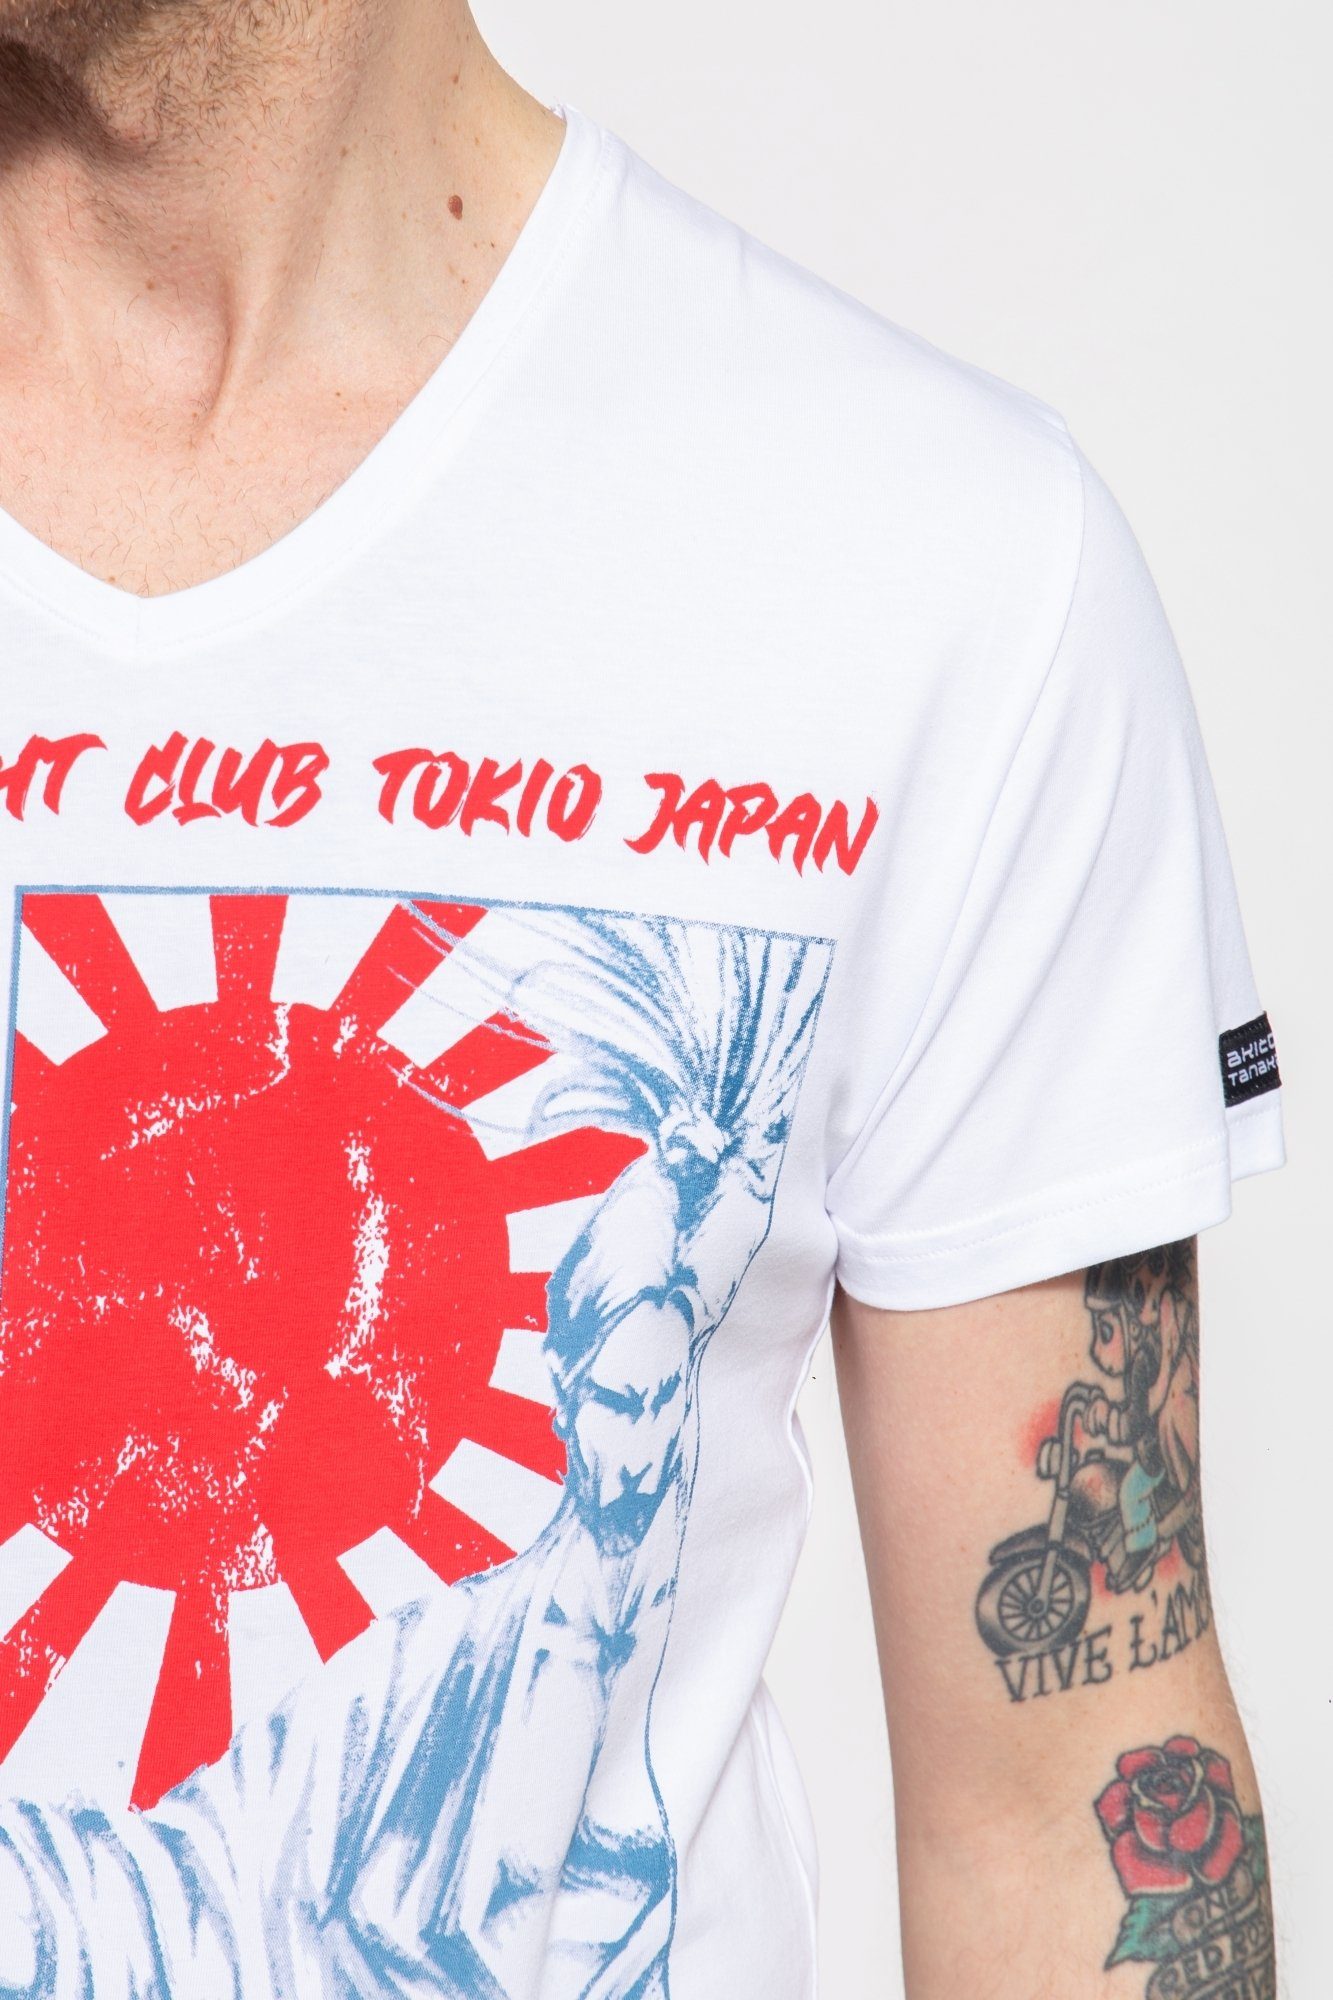 Akito Fight Club Print japanischem Tanaka T-Shirt weiß mit